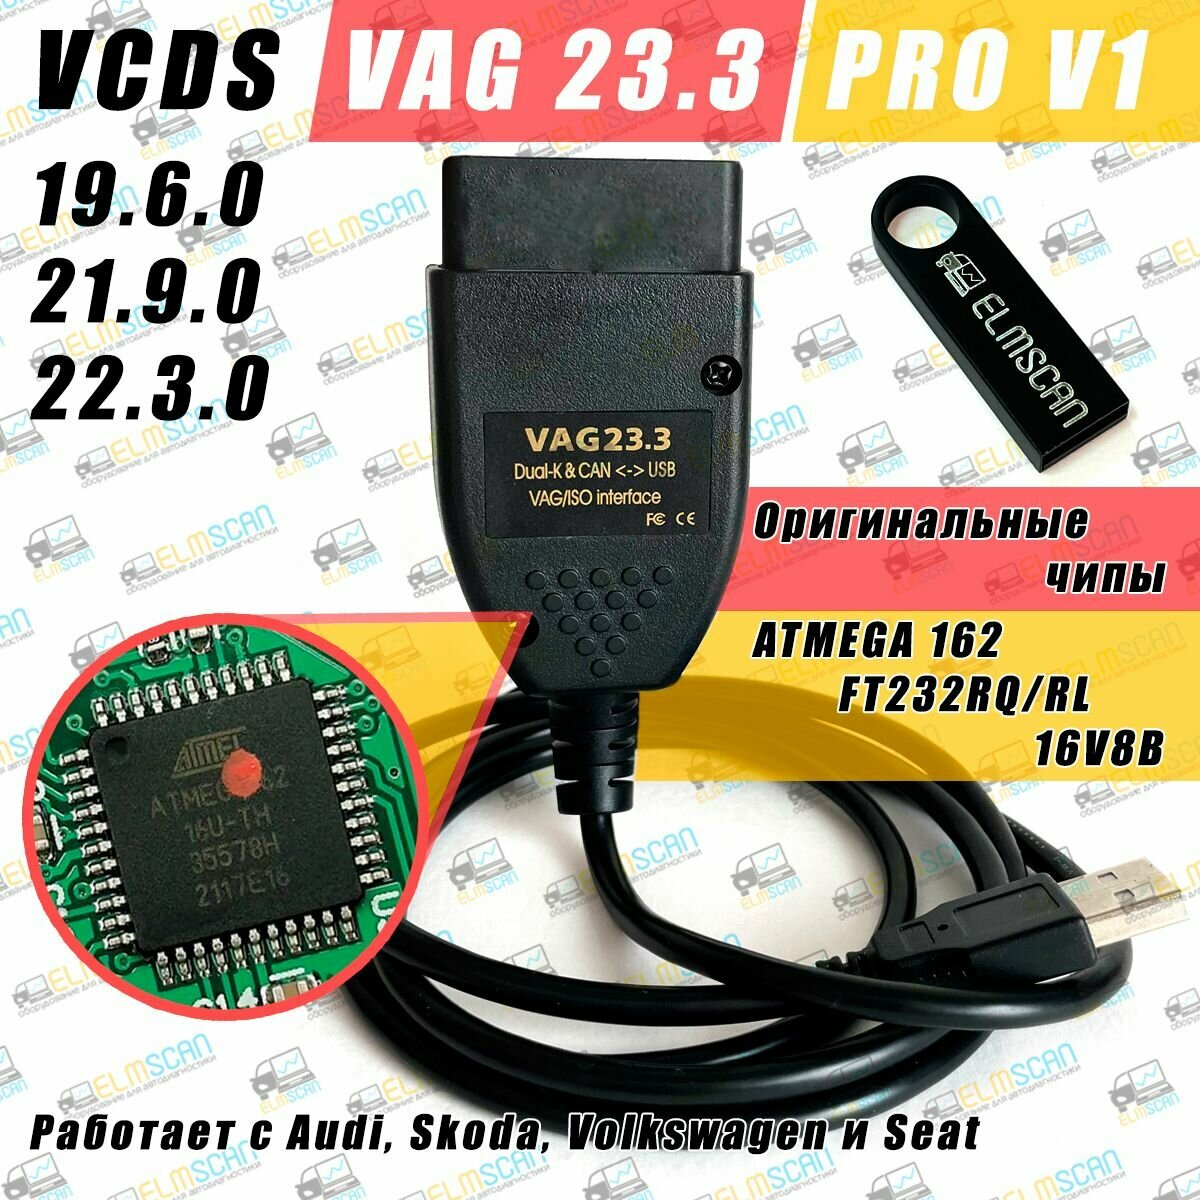 Автосканер VCDS PRO V1 с флешкой для VAG 23.3 RUS VAG COM Вася 19.6 (Audi Volkswagen Skoda 1990-2022 год) Версия PRO + видеокурсы + Сборник кодировок